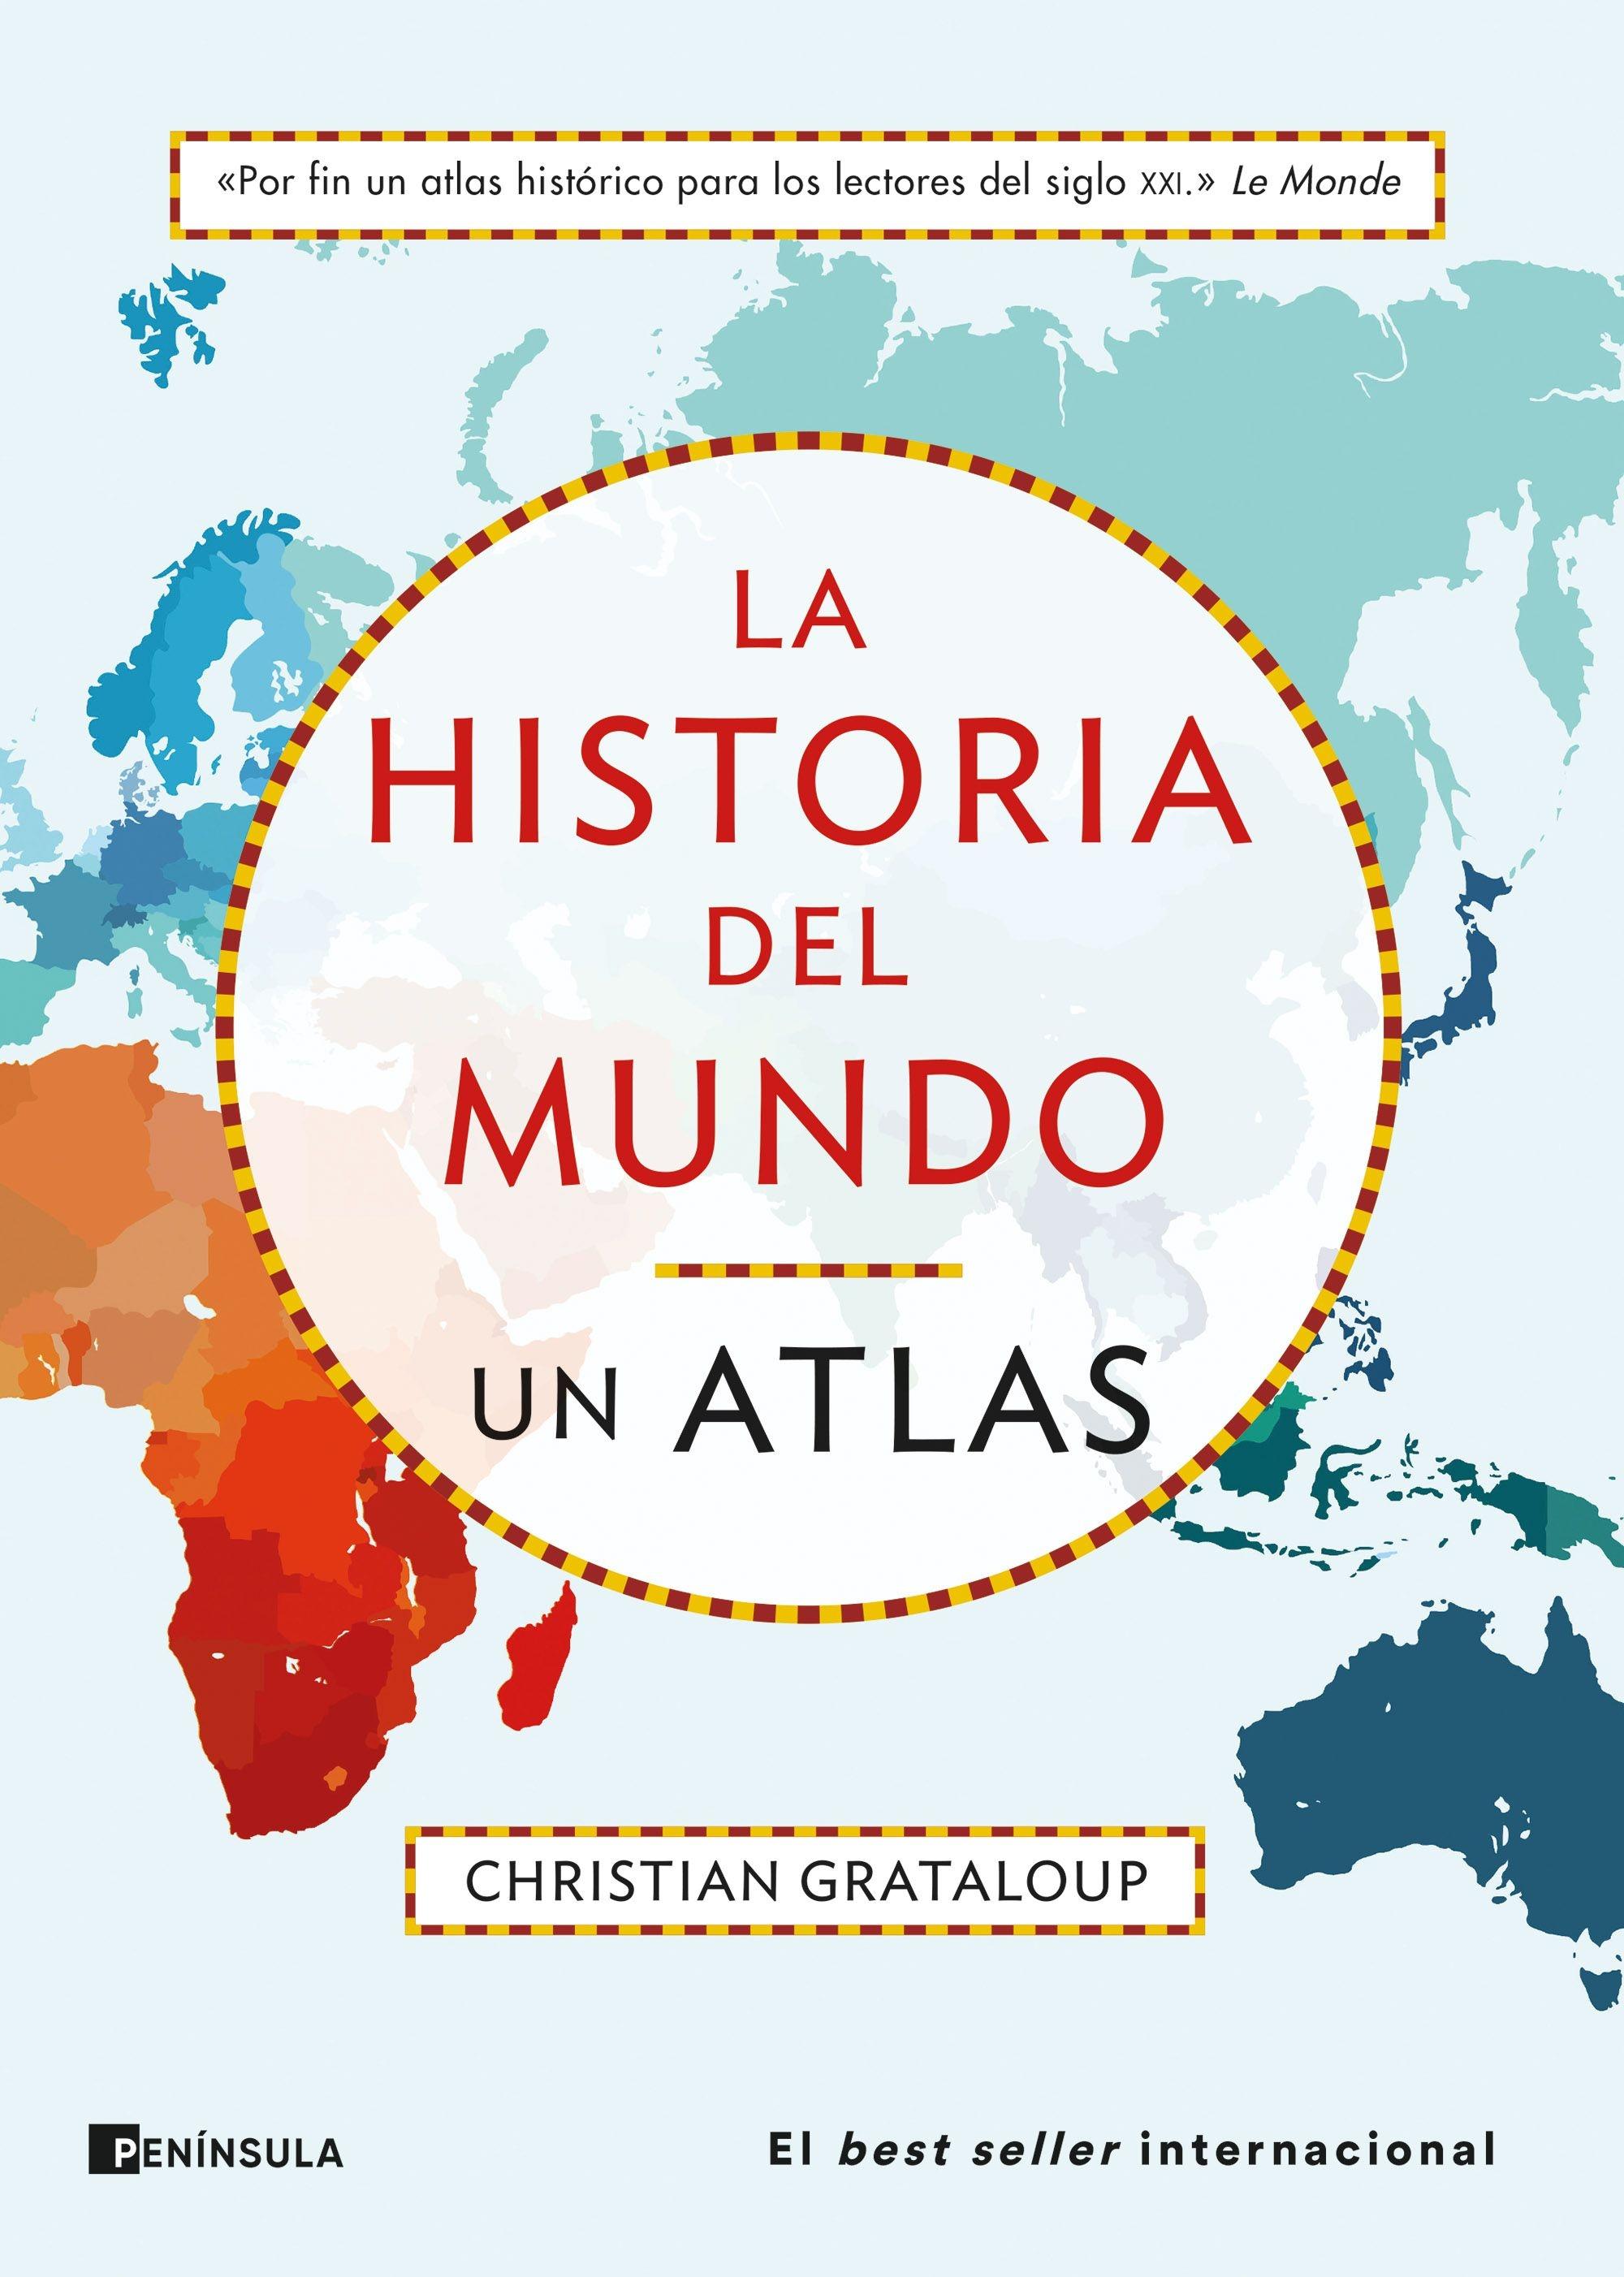 Historia del mundo, La. Un atlas "Un recorrido desde Mesopotamia a la actualidad en 515 mapas"